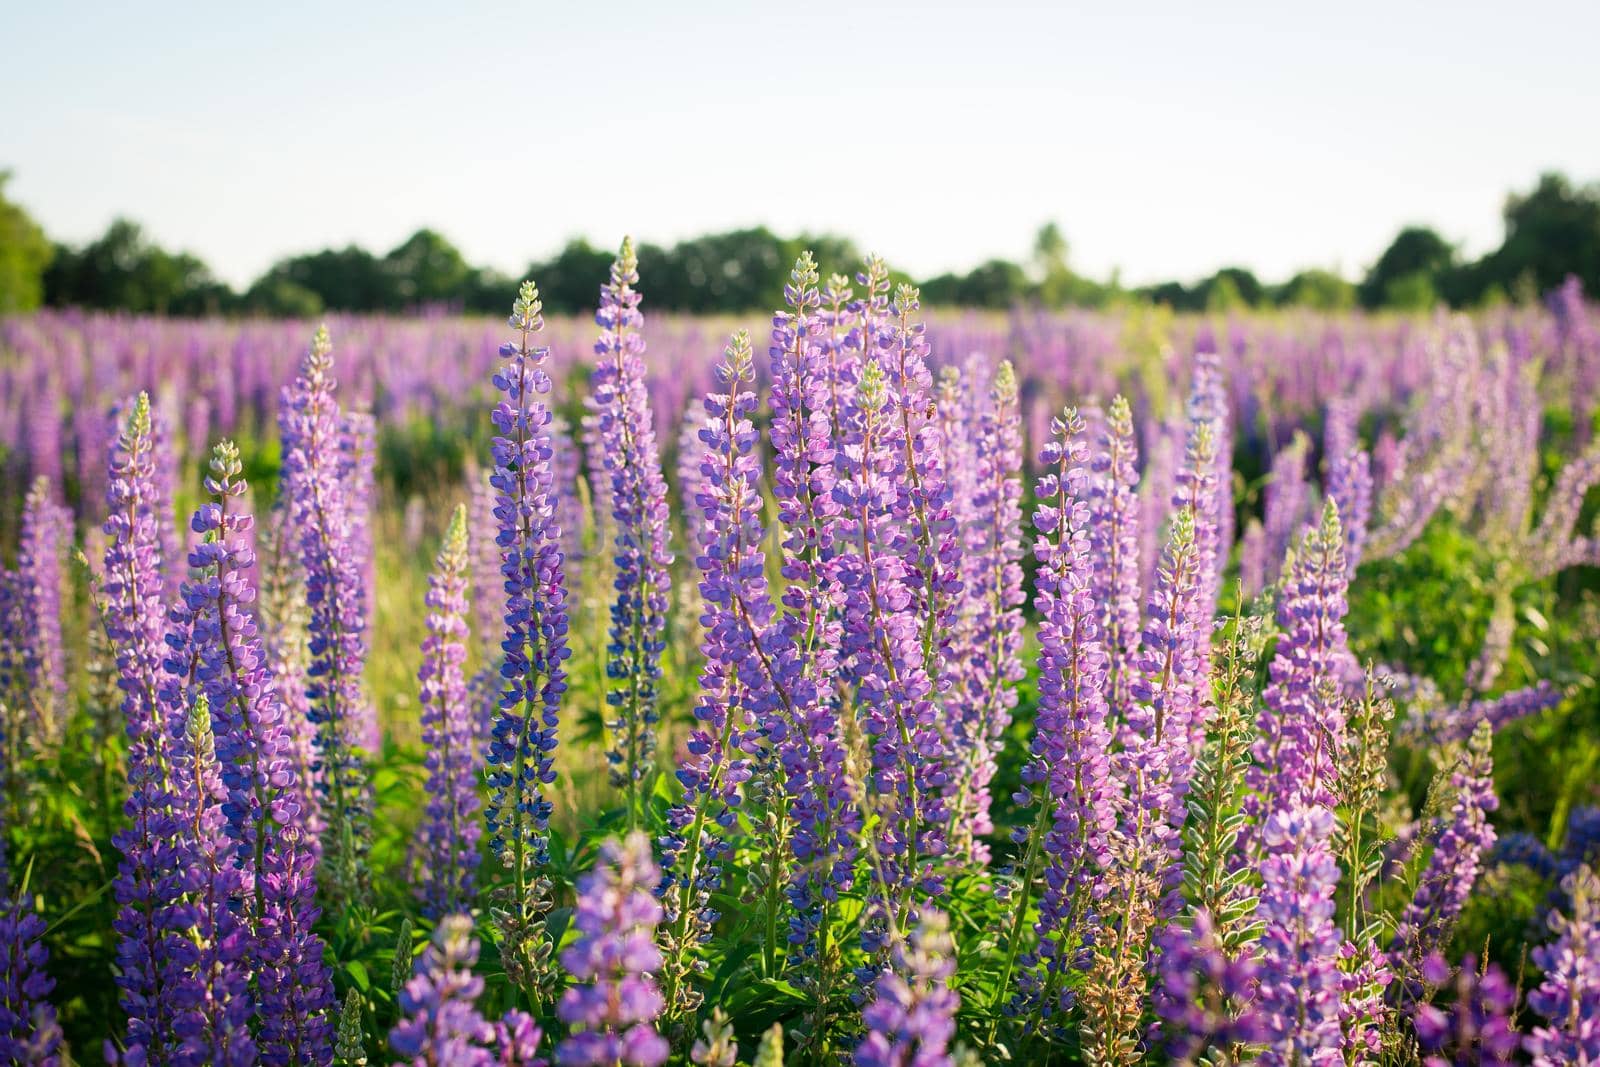 Lupine flowers in field by VitaliiPetrushenko